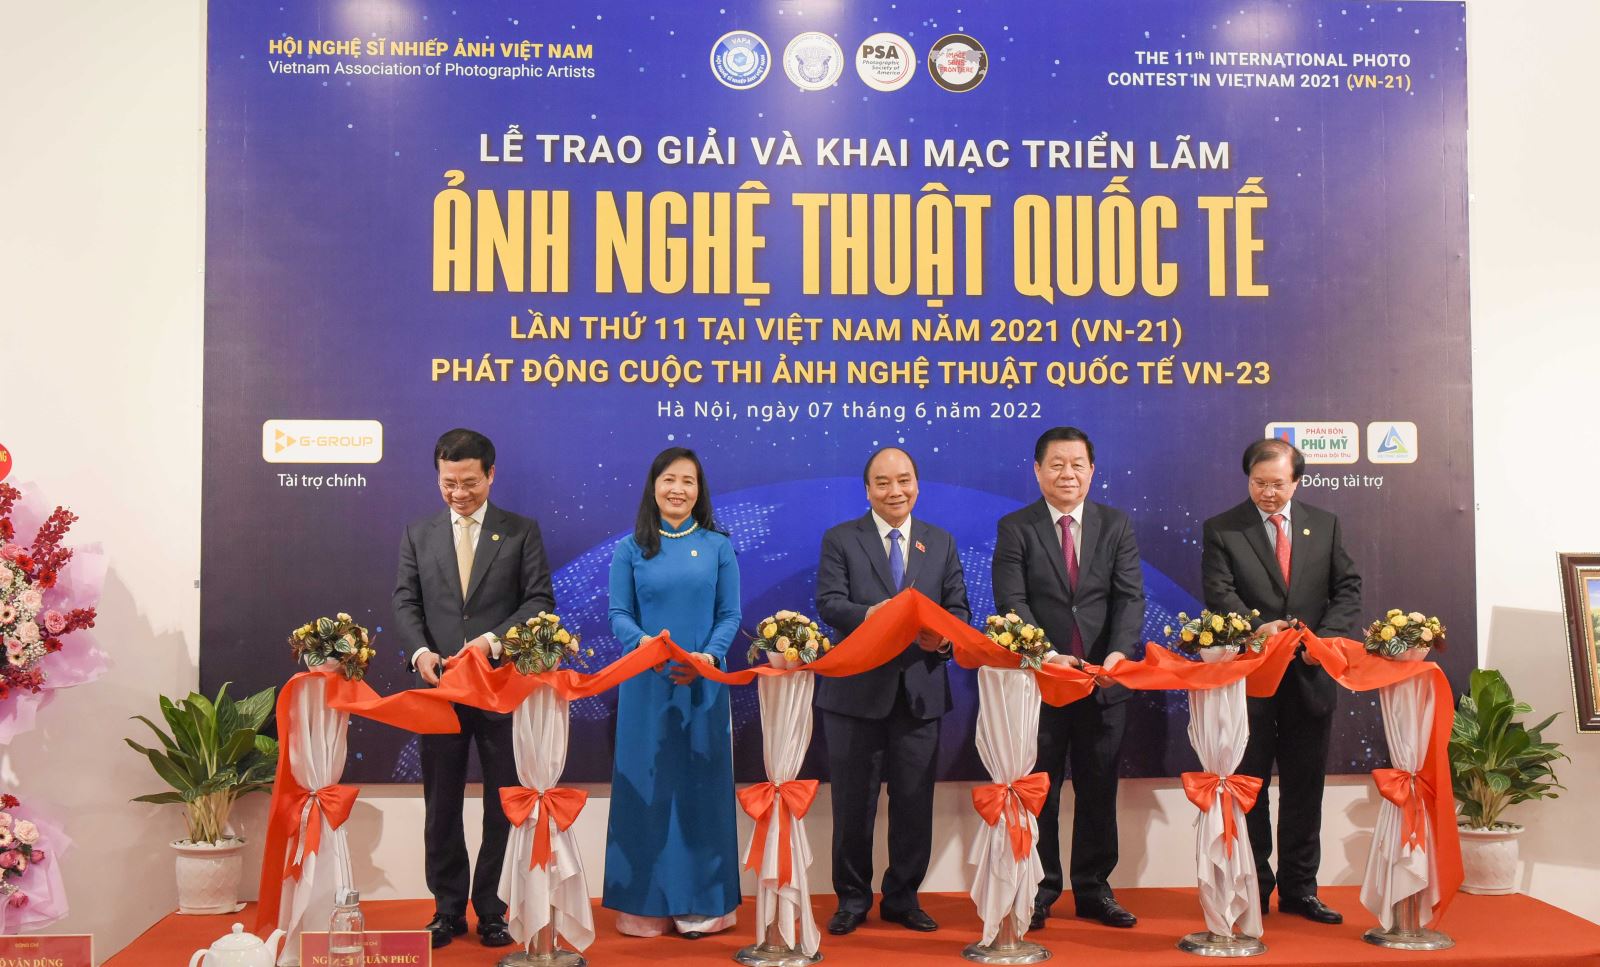 Lễ trao giải và Khai mạc Triển lãm Ảnh nghệ thuật Quốc tế lần thứ 11 tại Việt Nam